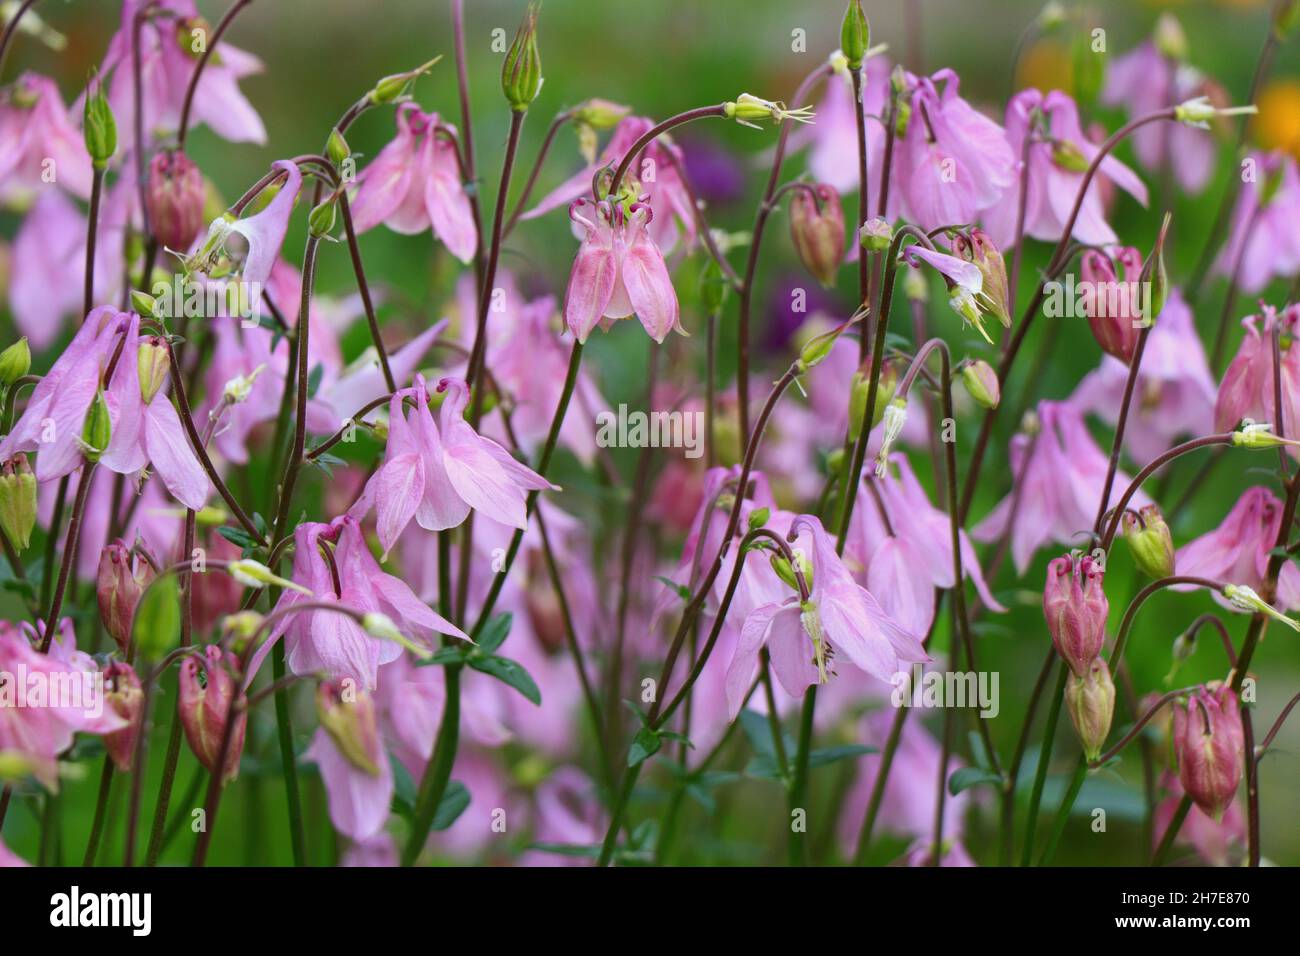 Blooming of Aquilegia vulgaris flowers in the garden Stock Photo